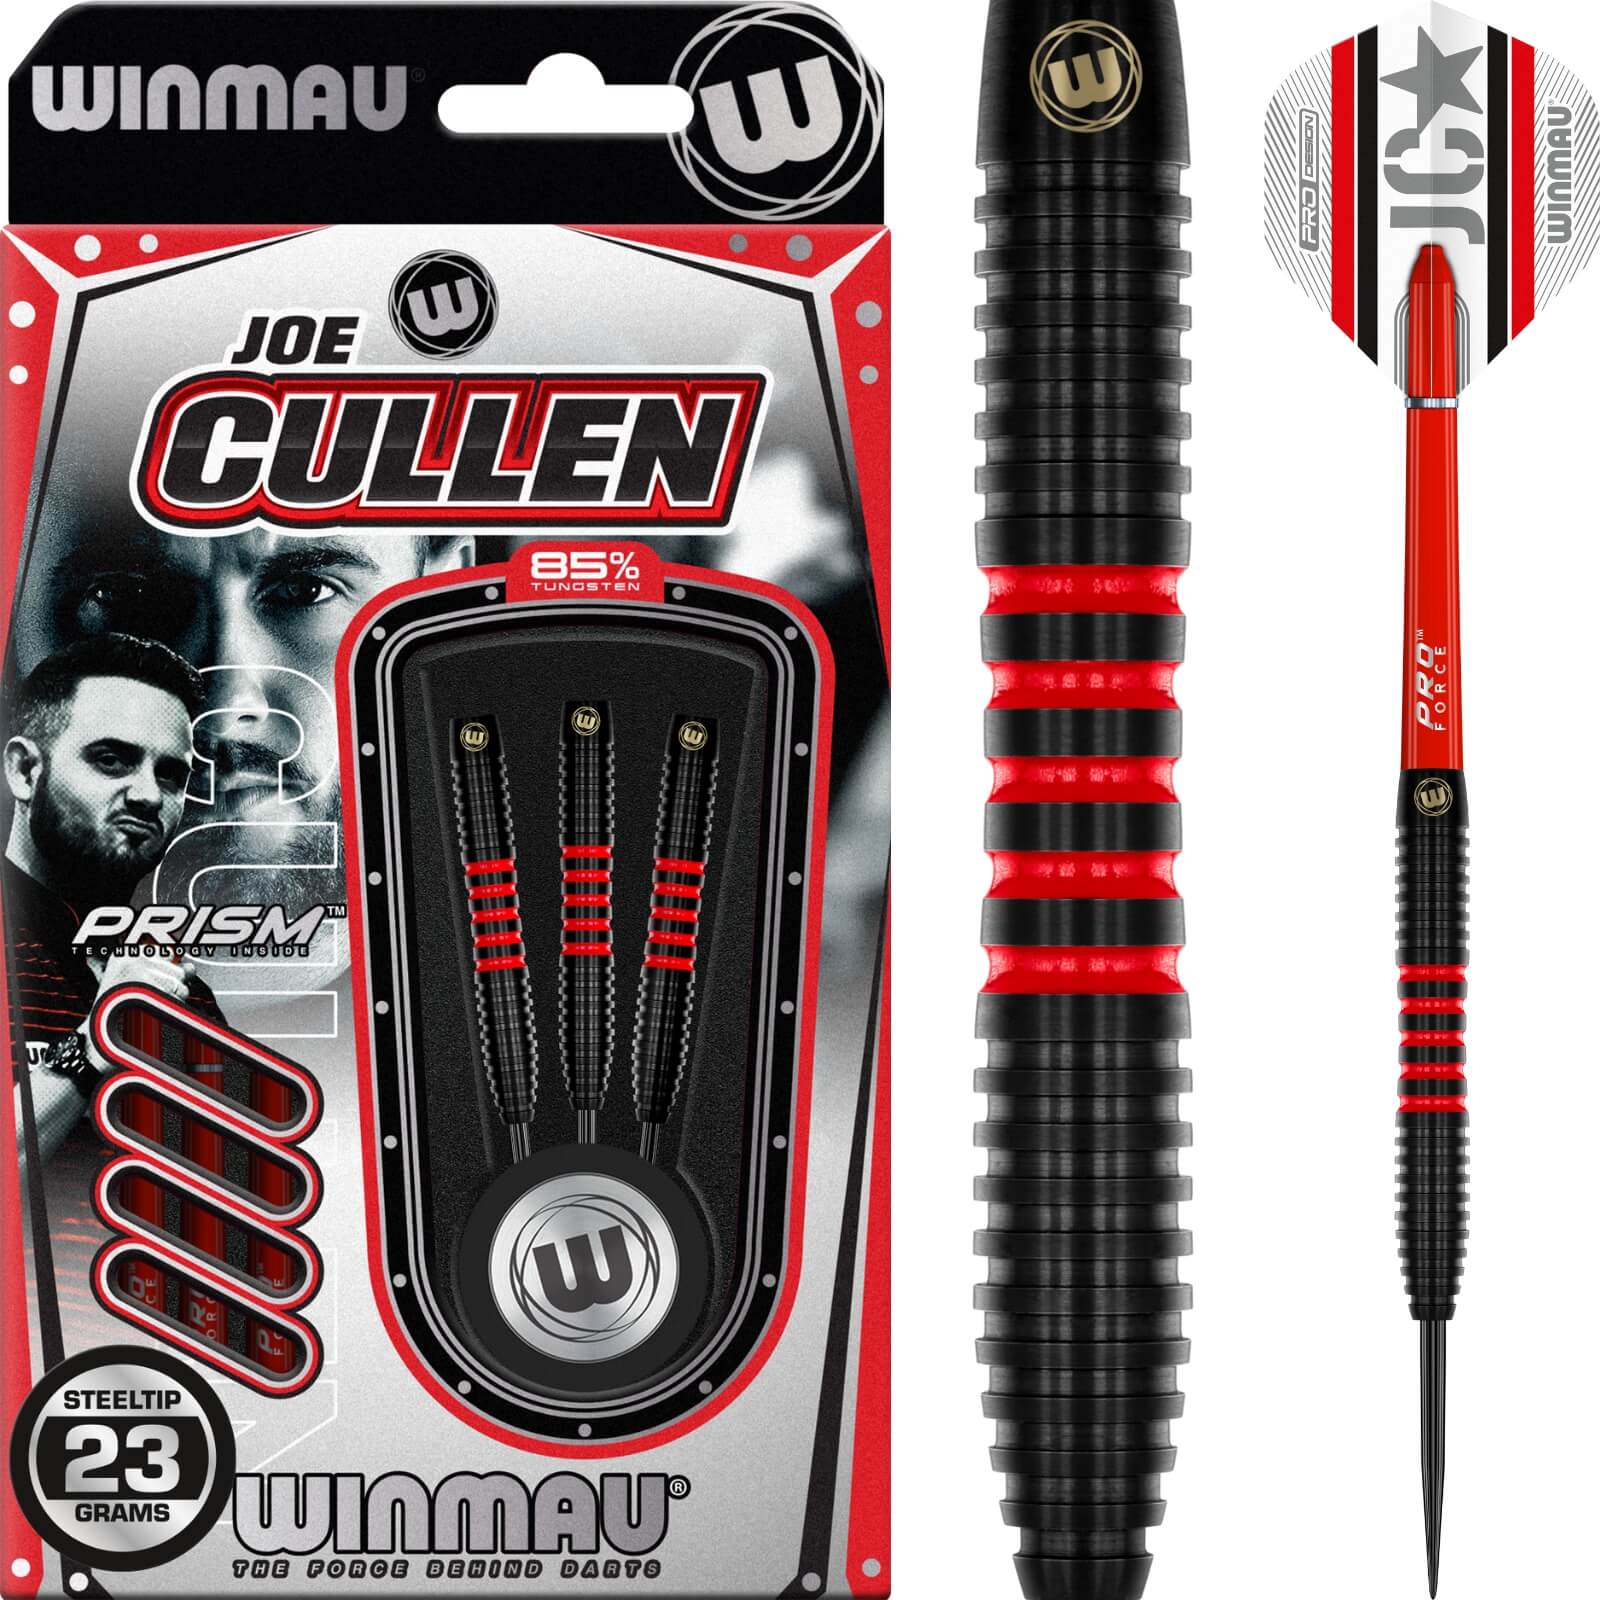 Darts - Winmau - Joe Cullen 85 Pro Series Darts - Steel Tip - 85% Tungsten - 23g 25g 